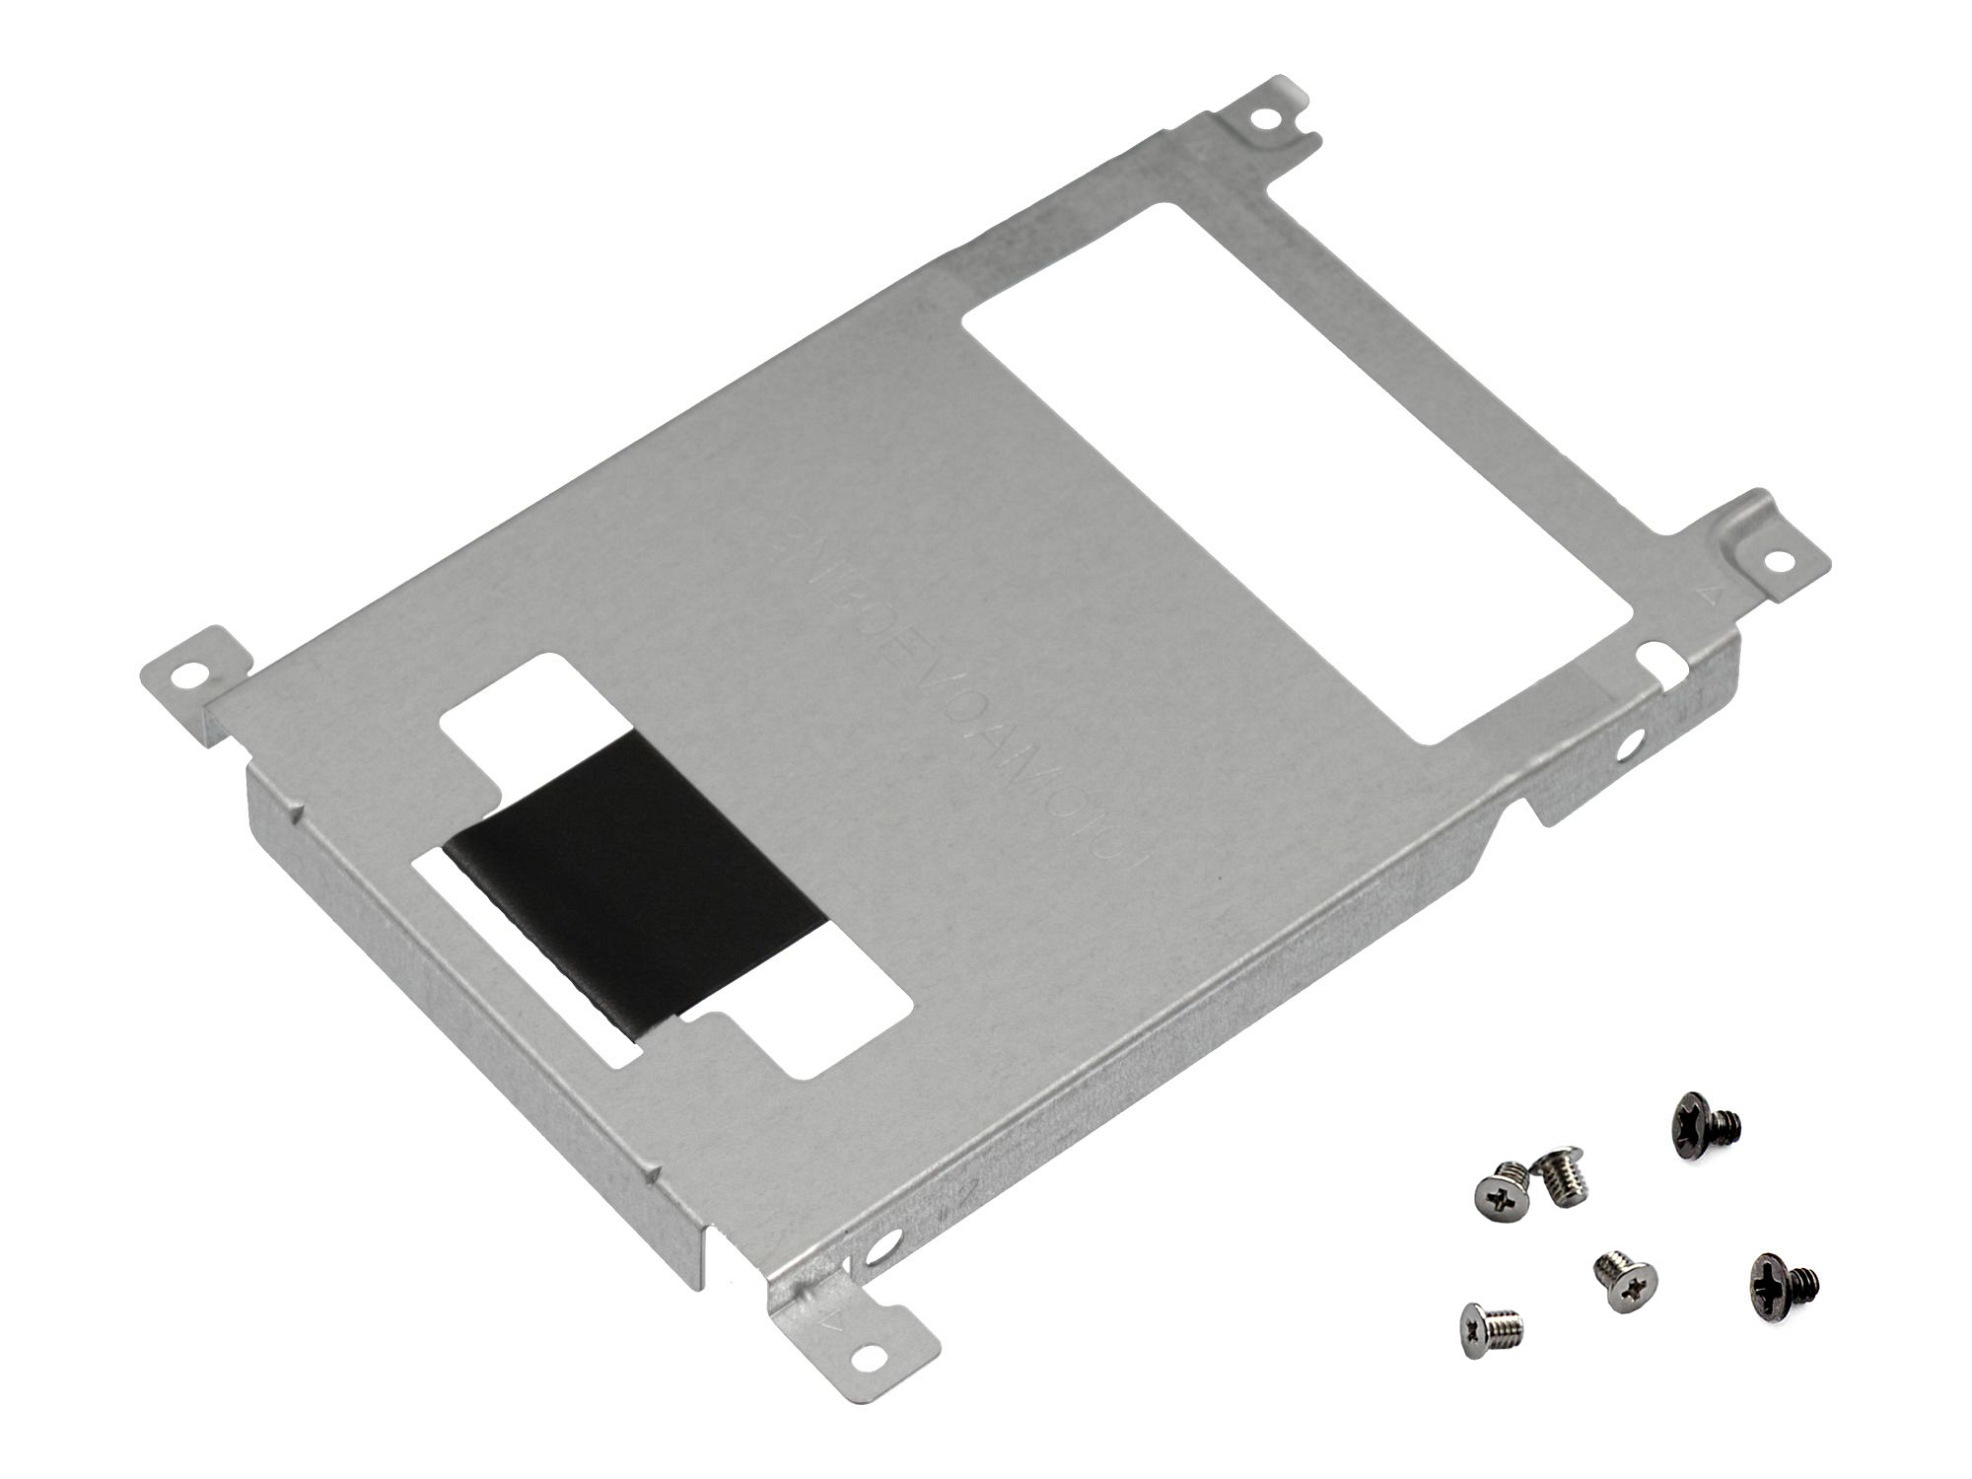 Festplatten-Einbaurahmen für den 1. Festplatten Schacht inkl. Schrauben Original für Asus VivoBook Pro 17 N705UD